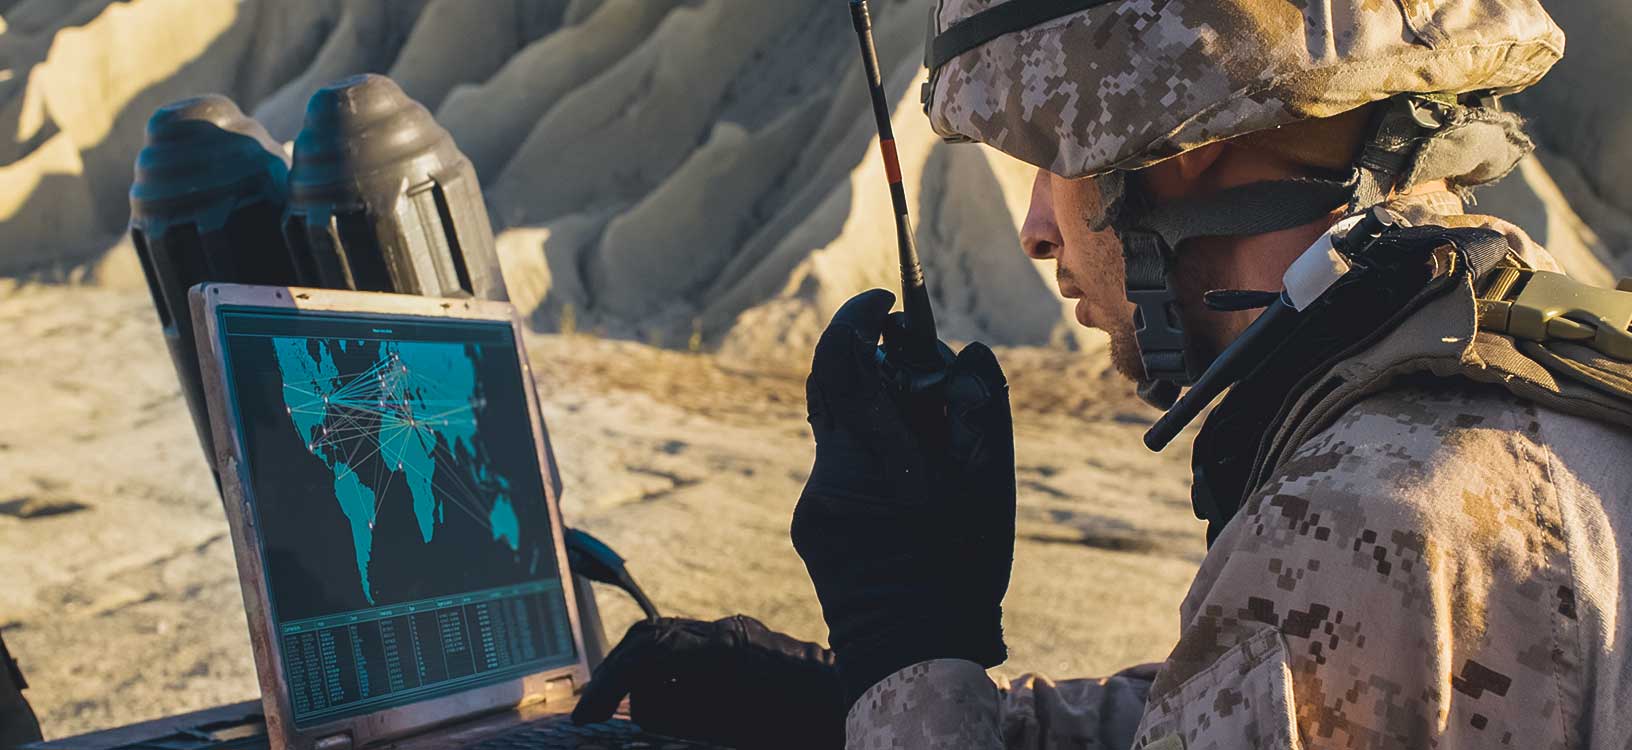 Soldado utiliza portátil y radio para comunicarse durante operación militar en el desierto